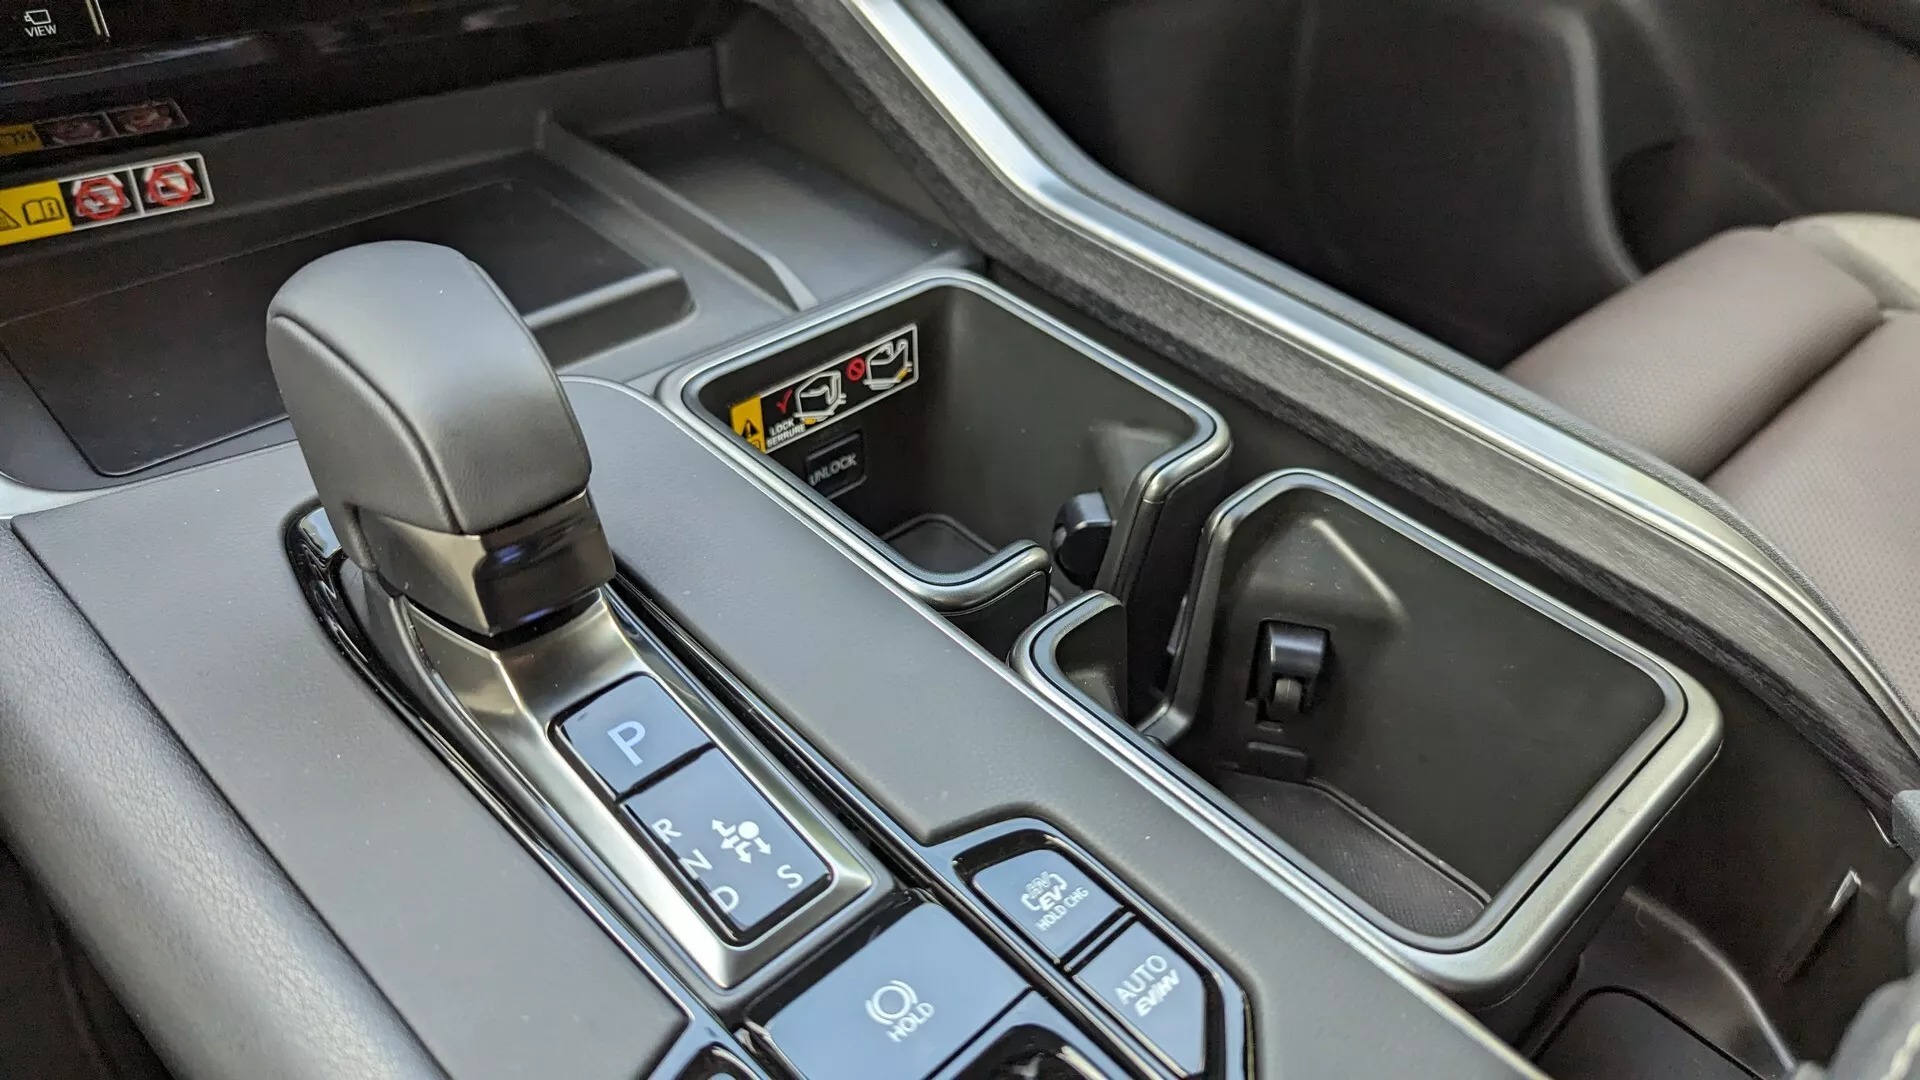 Lexus TX có trang bị cho người sợ ăn uống làm bẩn xe, tháo ra vệ sinh trong ‘nốt nhạc’